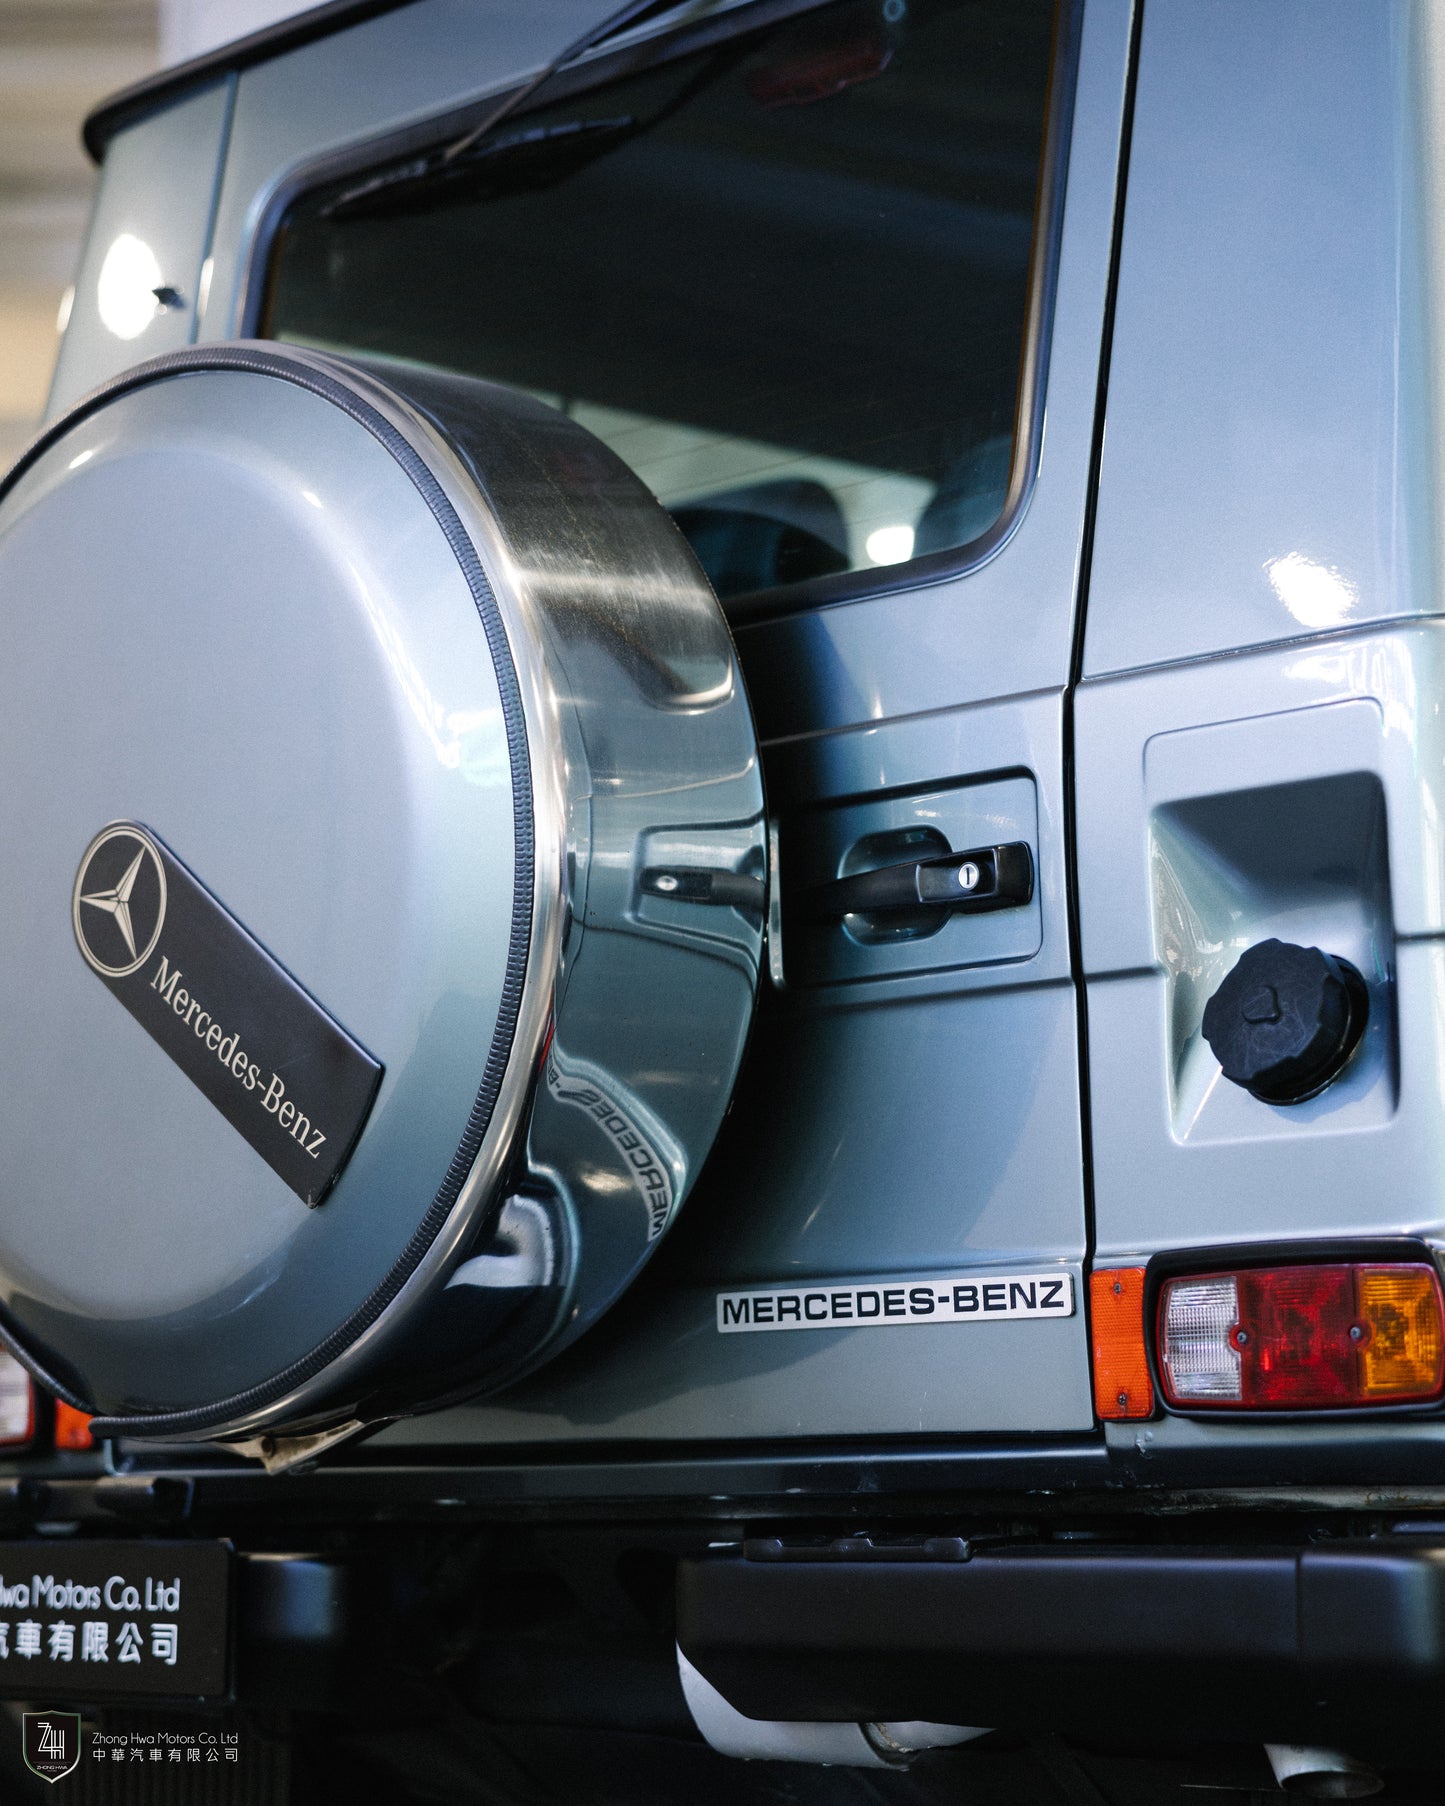 1987 Mercedes-Benz 230GE